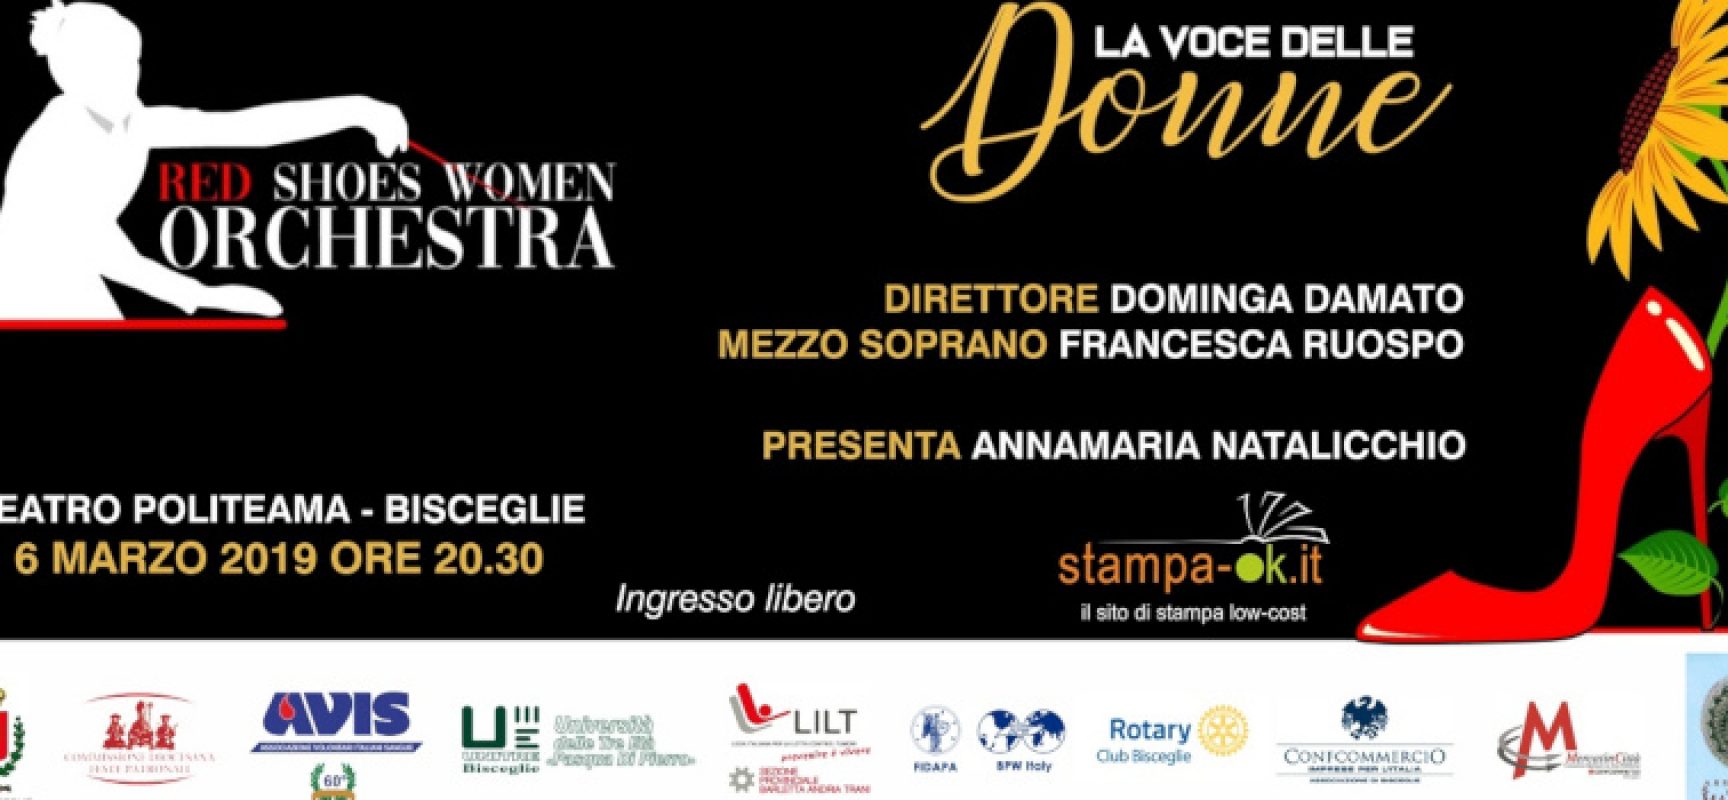 La Red Shoes Women Orchestra al Politeama per un concerto contro la violenza sulle donne